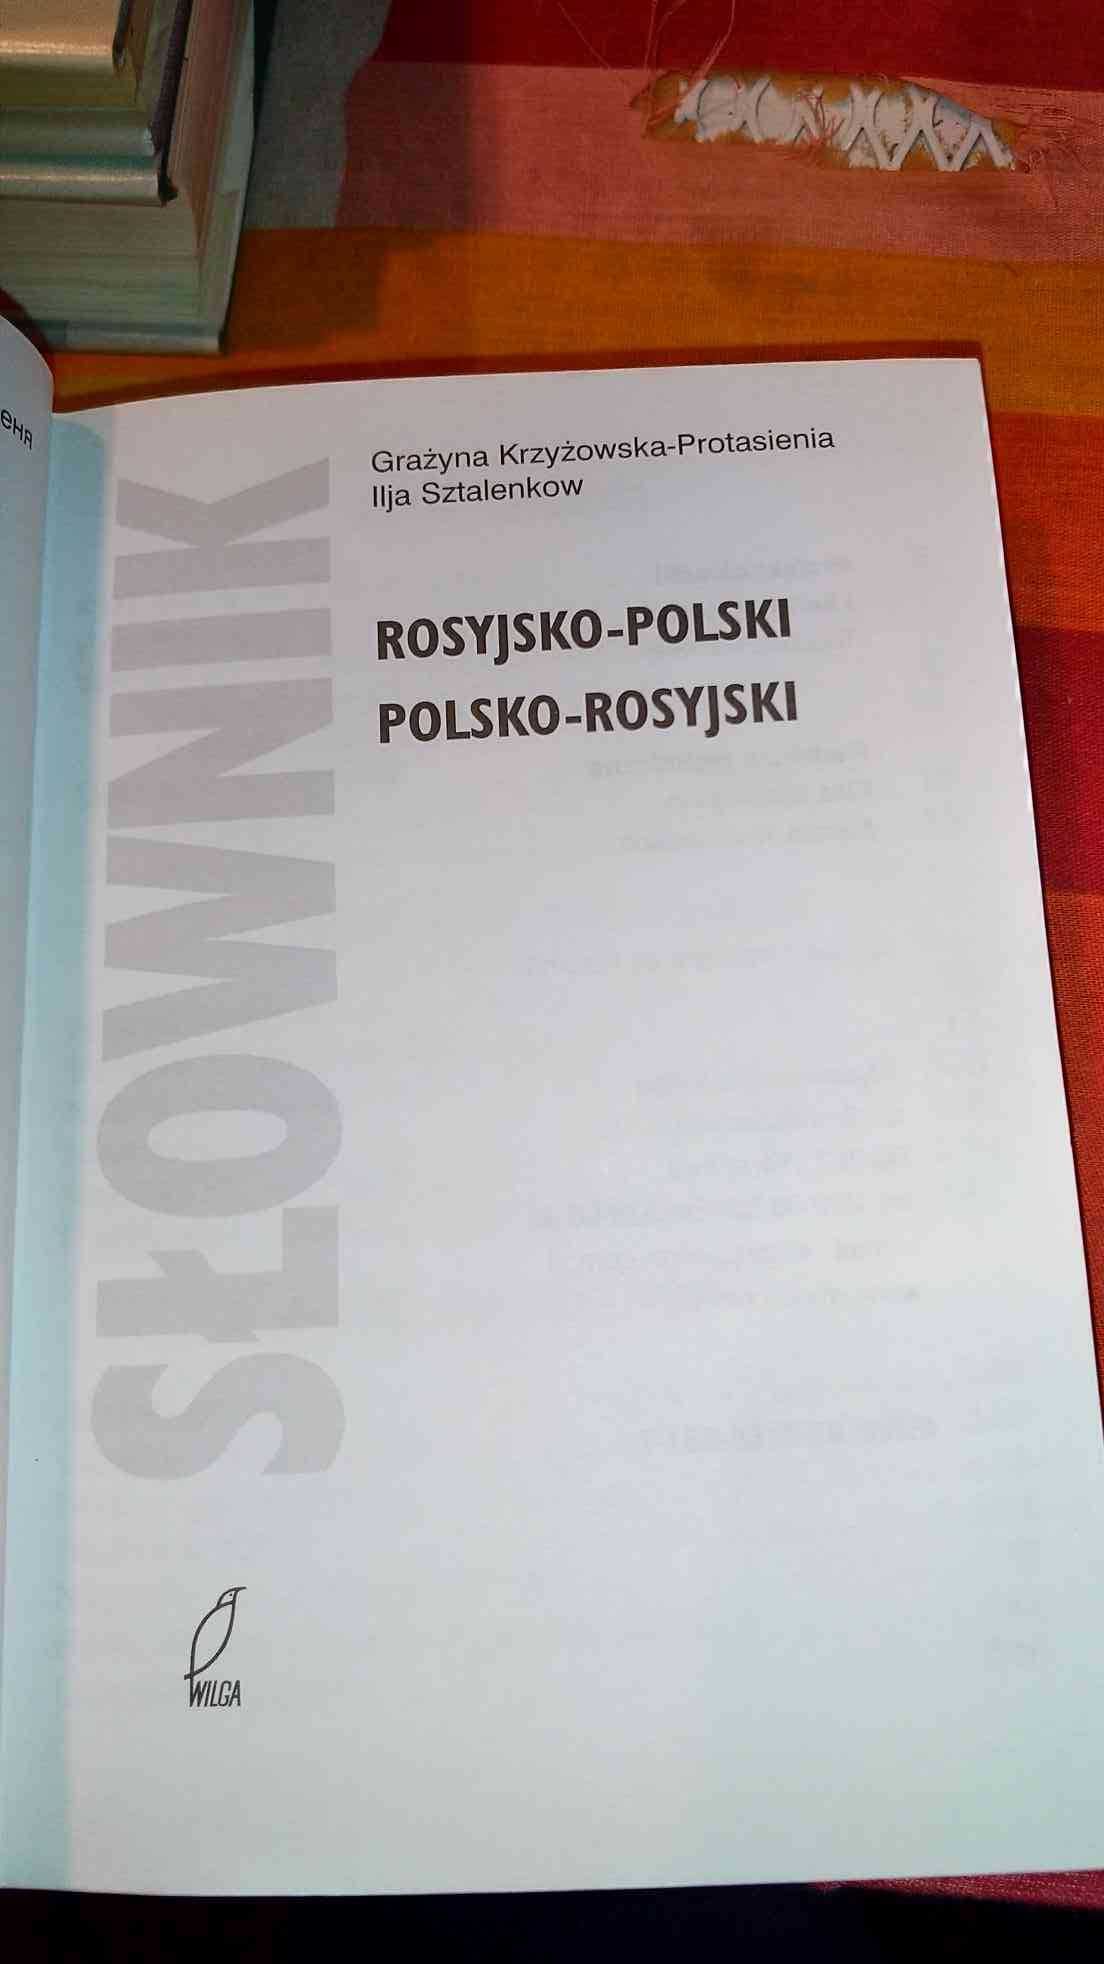 Słownik
Polsko-rosyjski
Rosyjsko-polski